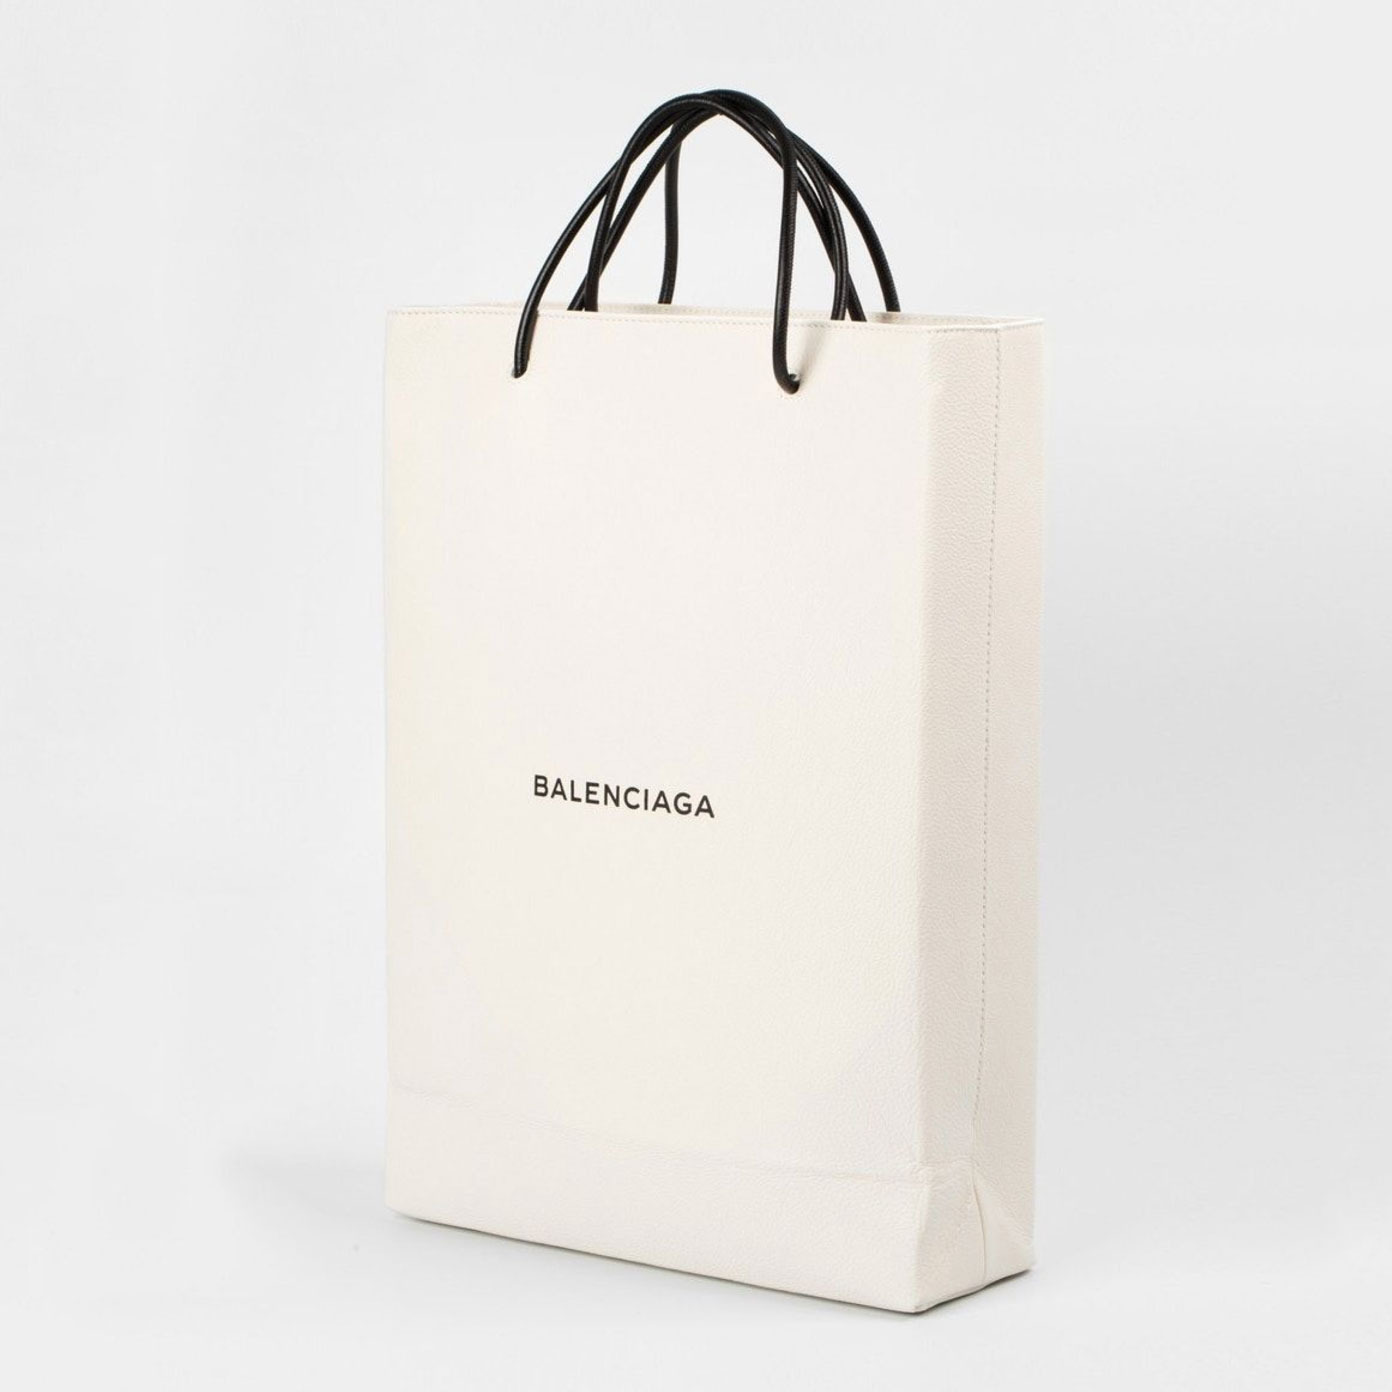 Balenciaga's $1,000 Shopping Bag Is Already Sold Out